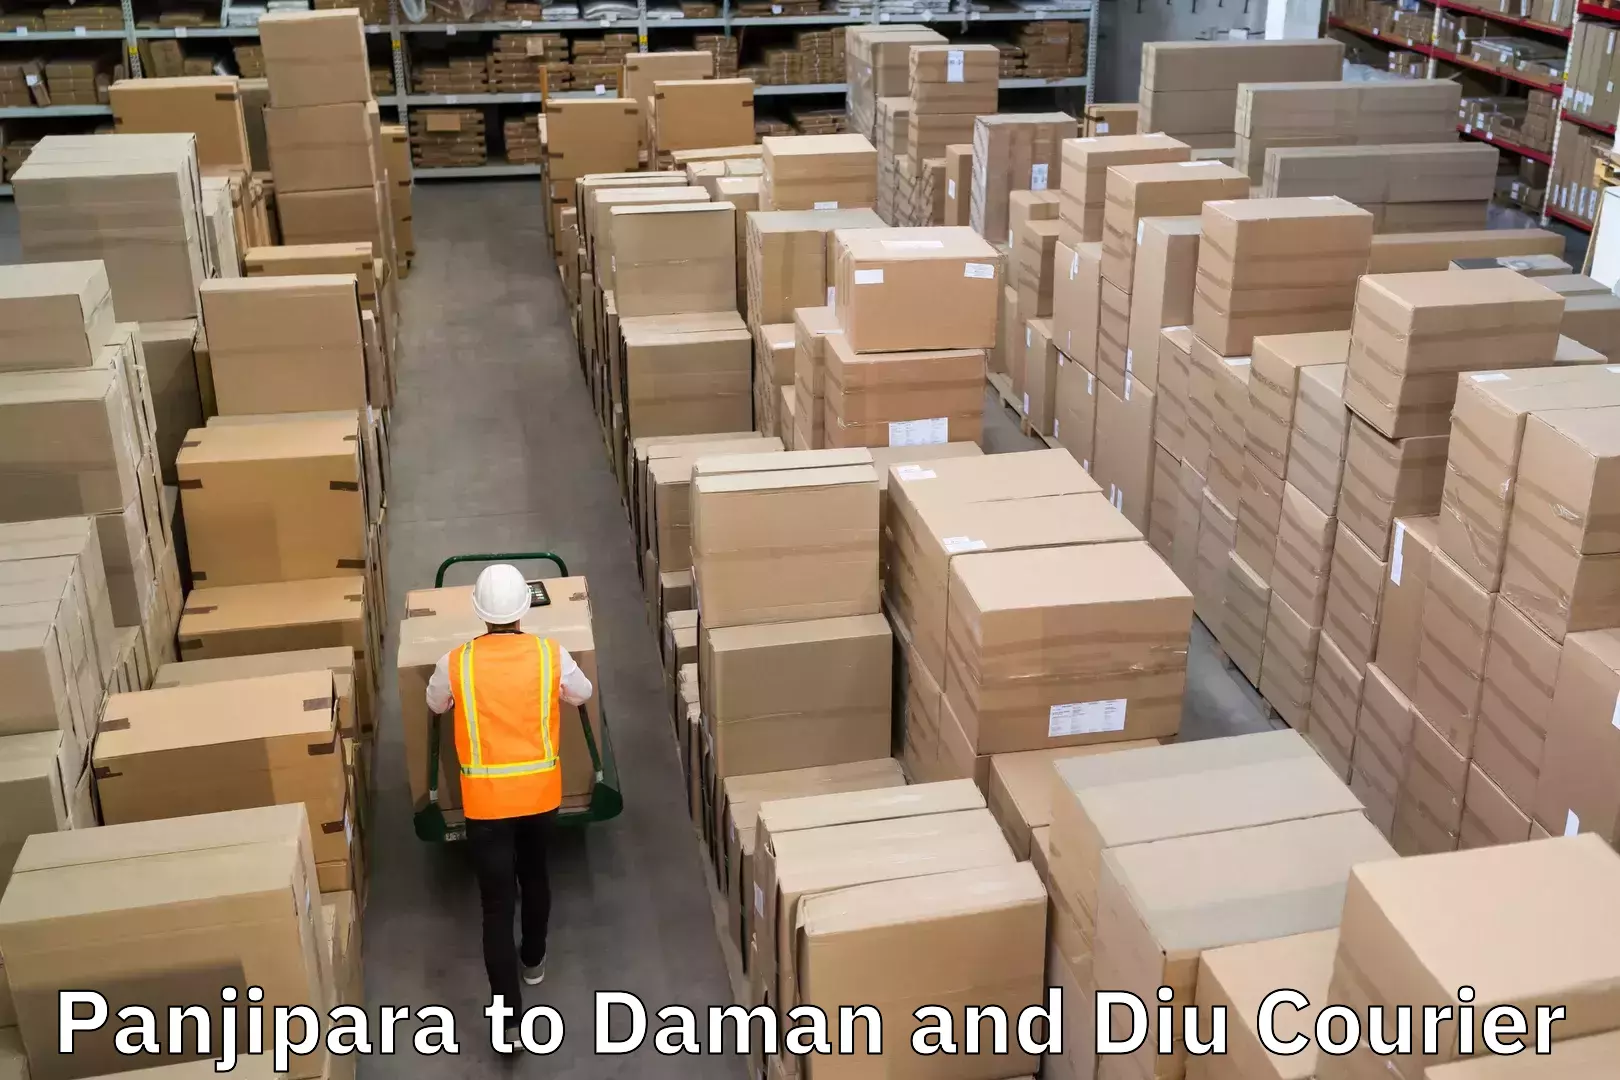 Corporate courier solutions Panjipara to Daman and Diu